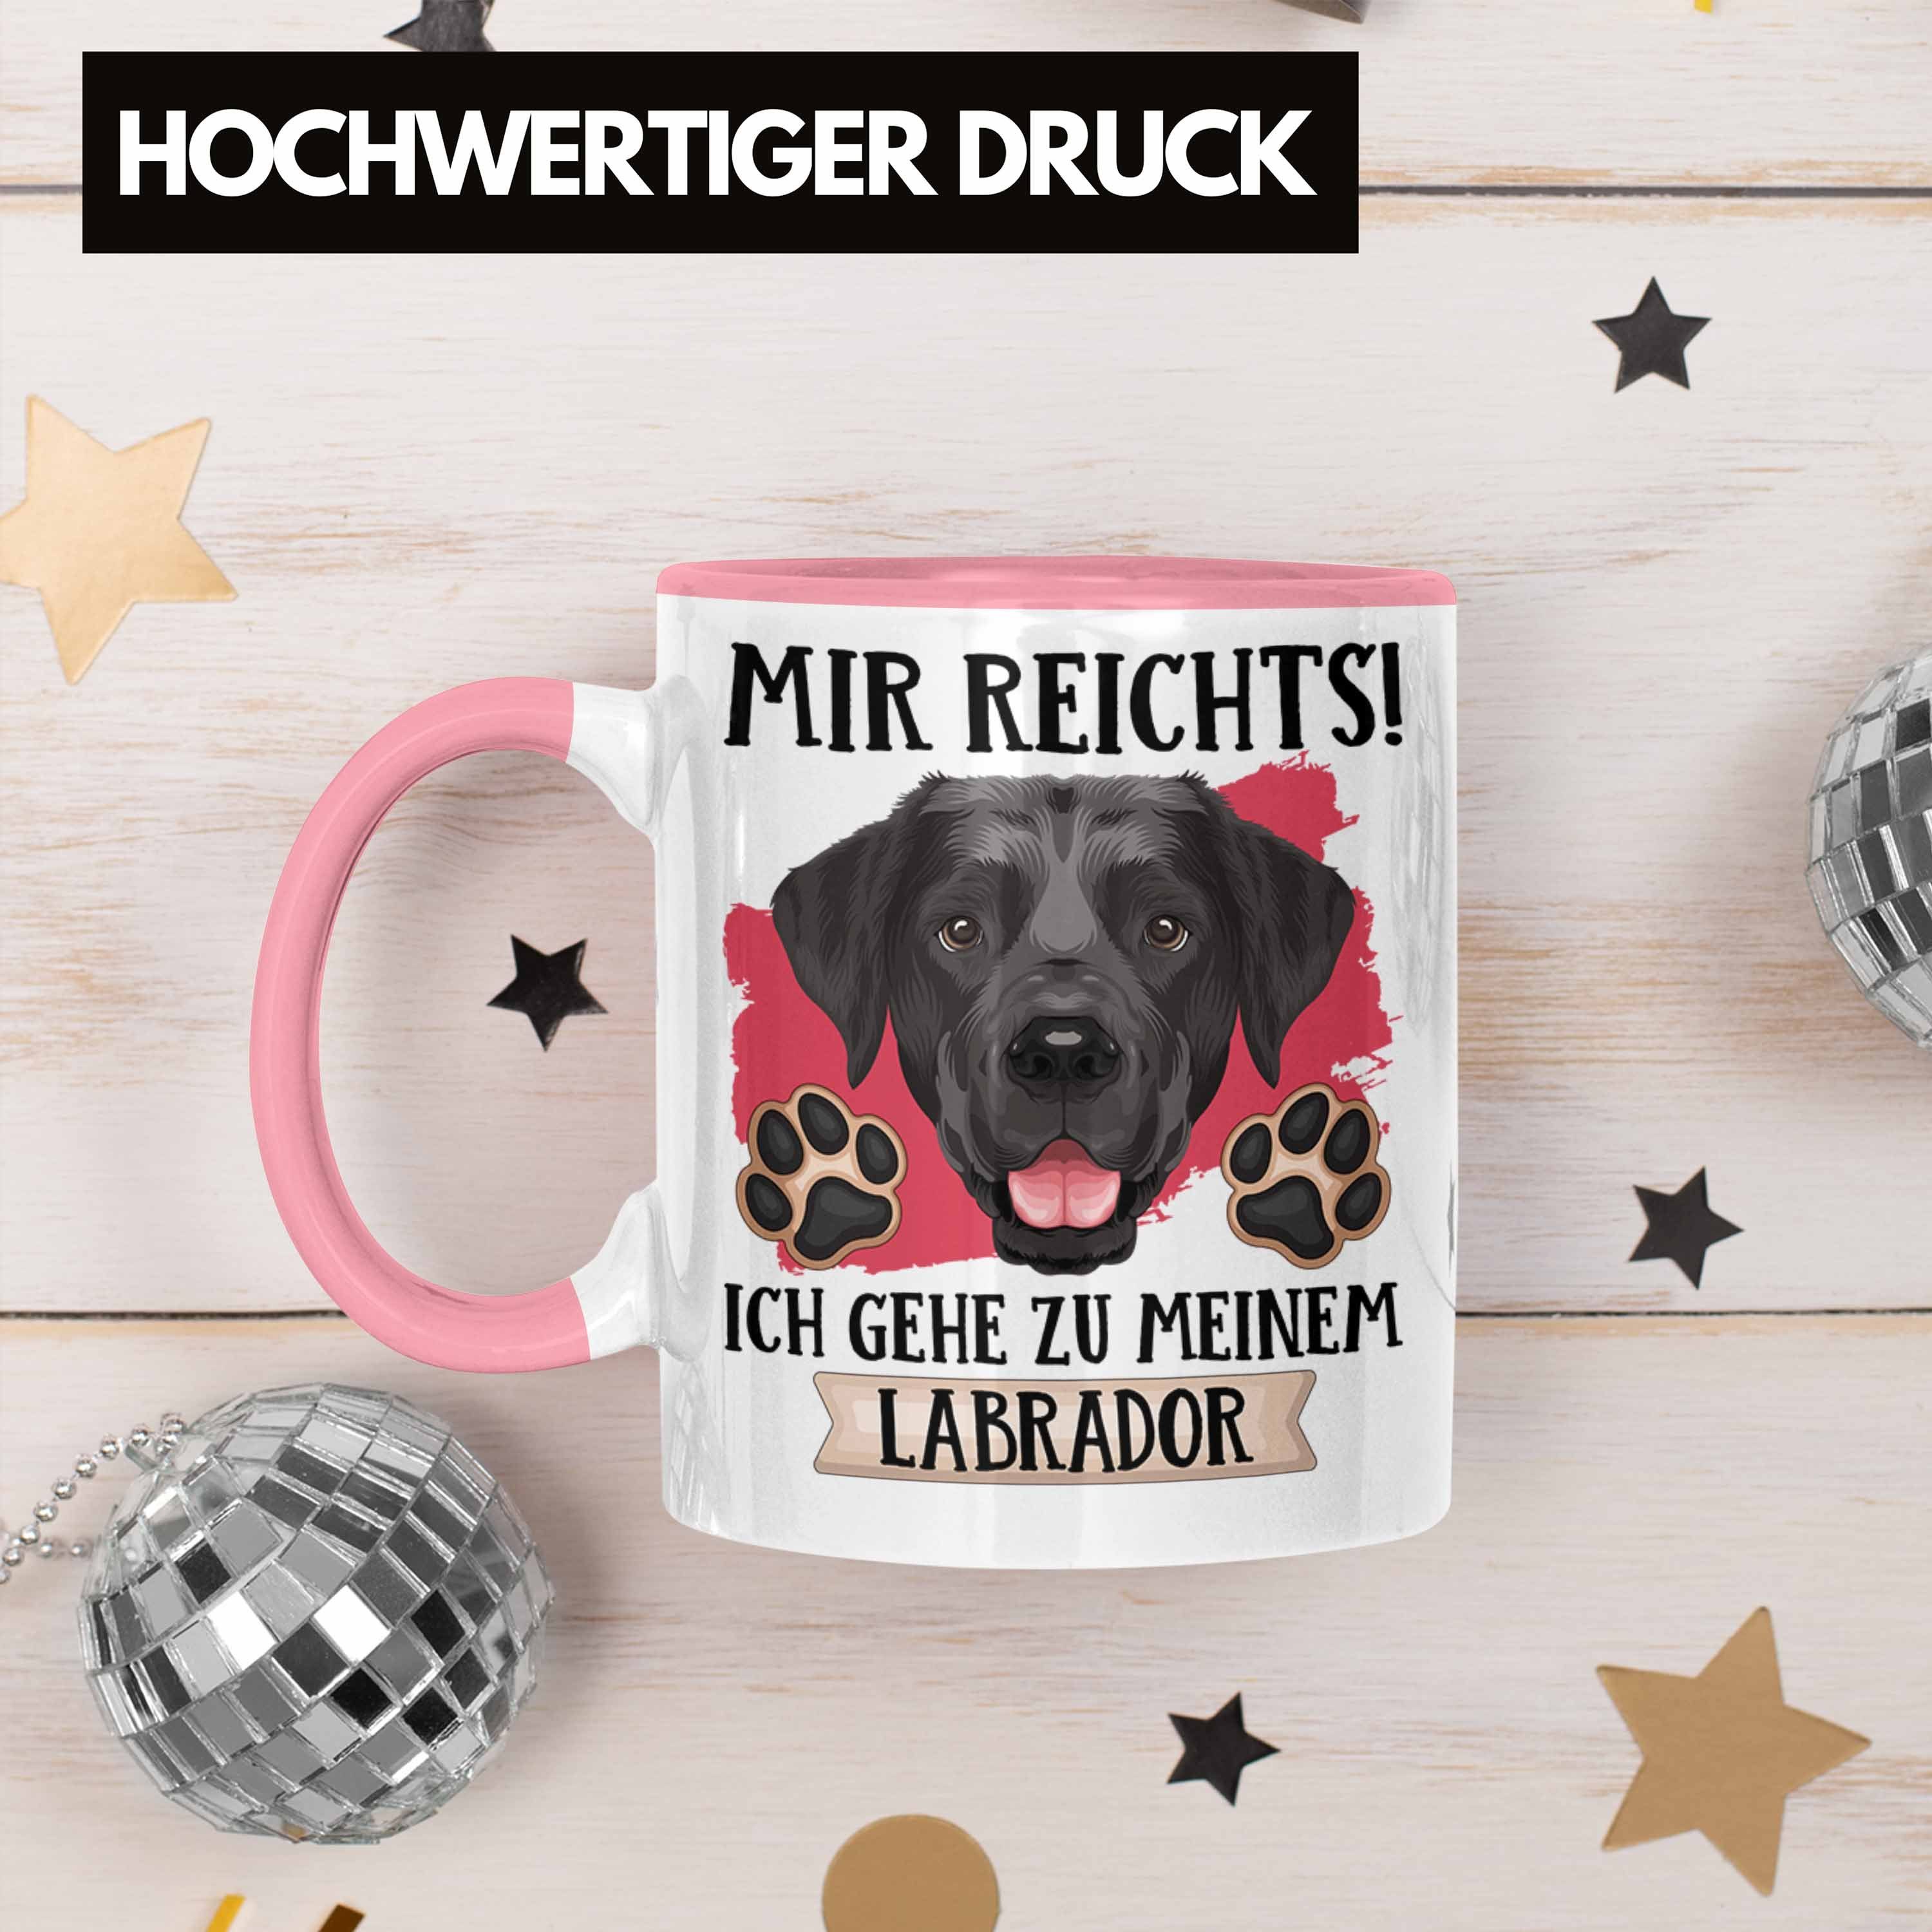 Trendation Tasse Labrador Besitzer Tasse Reic Geschenk Rosa Geschenkidee Spruch Mir Lustiger